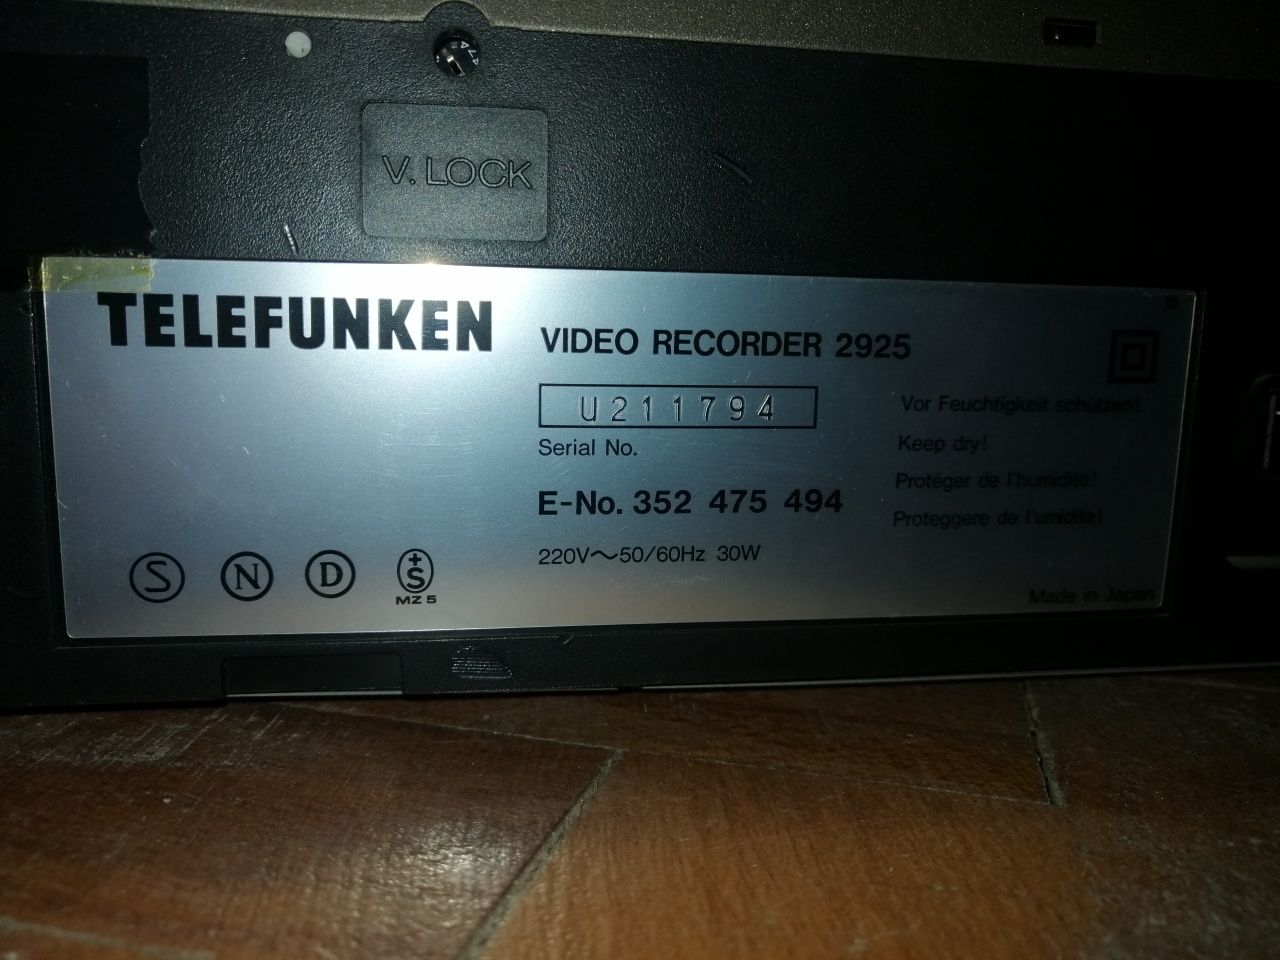 Video recorder Telefunken 2925